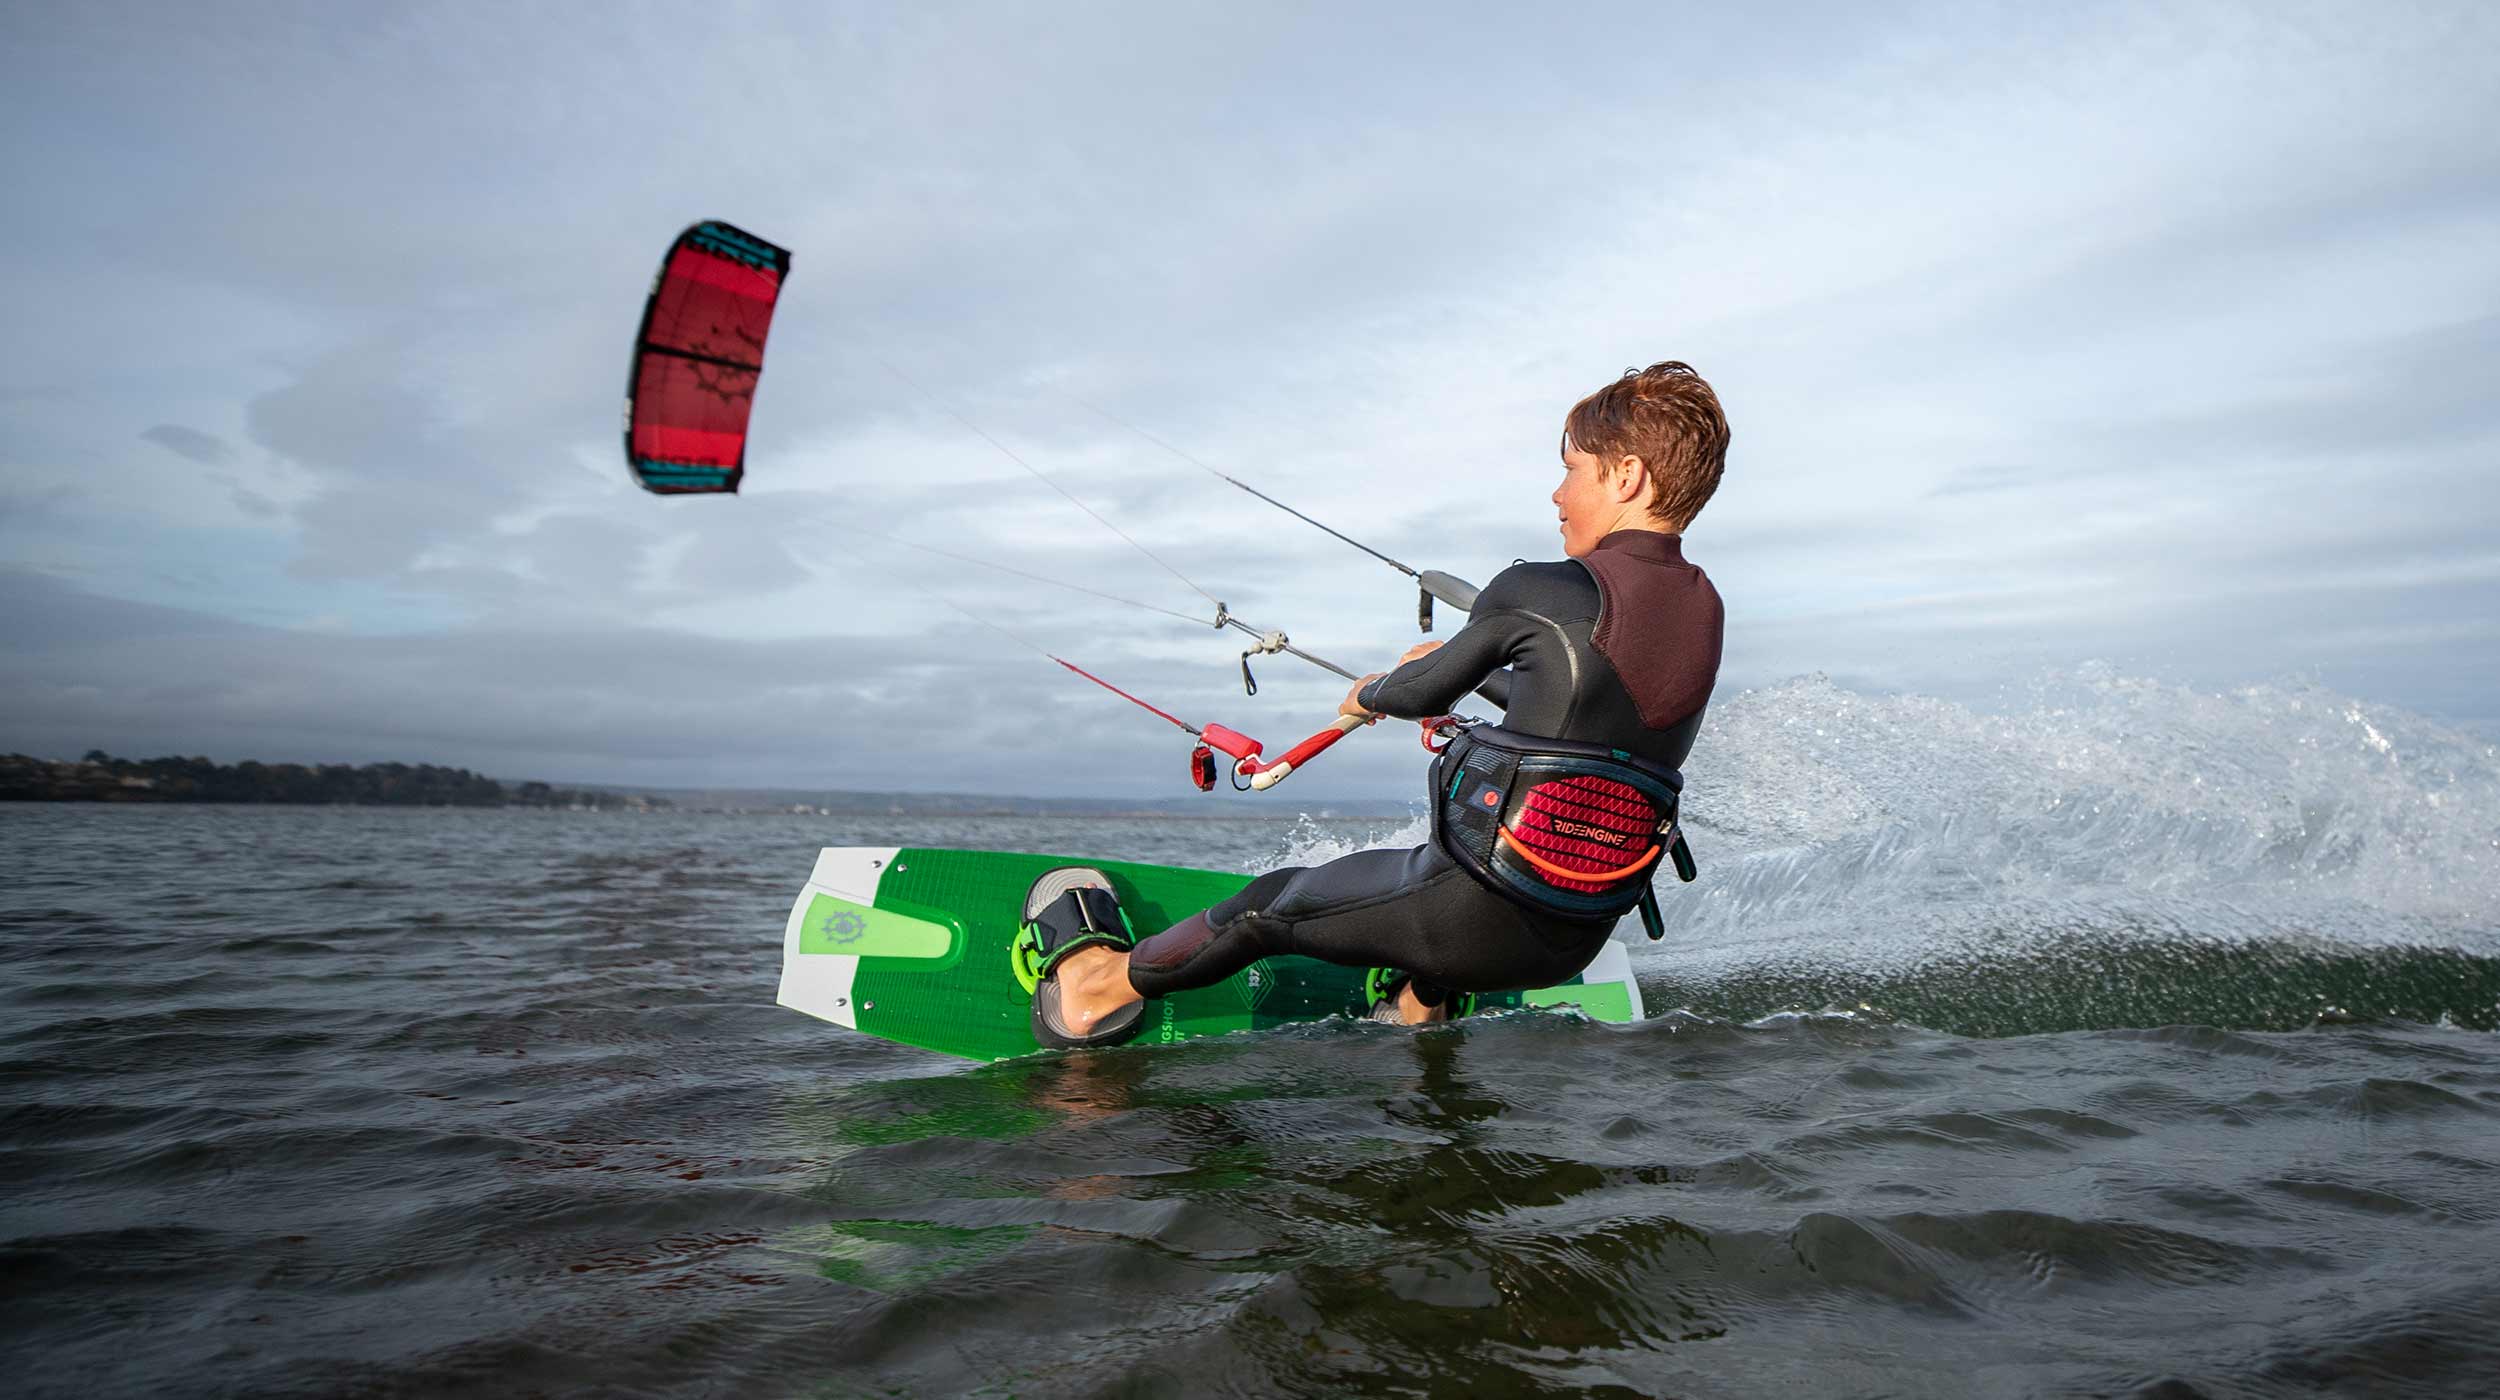 Kite surfing technique